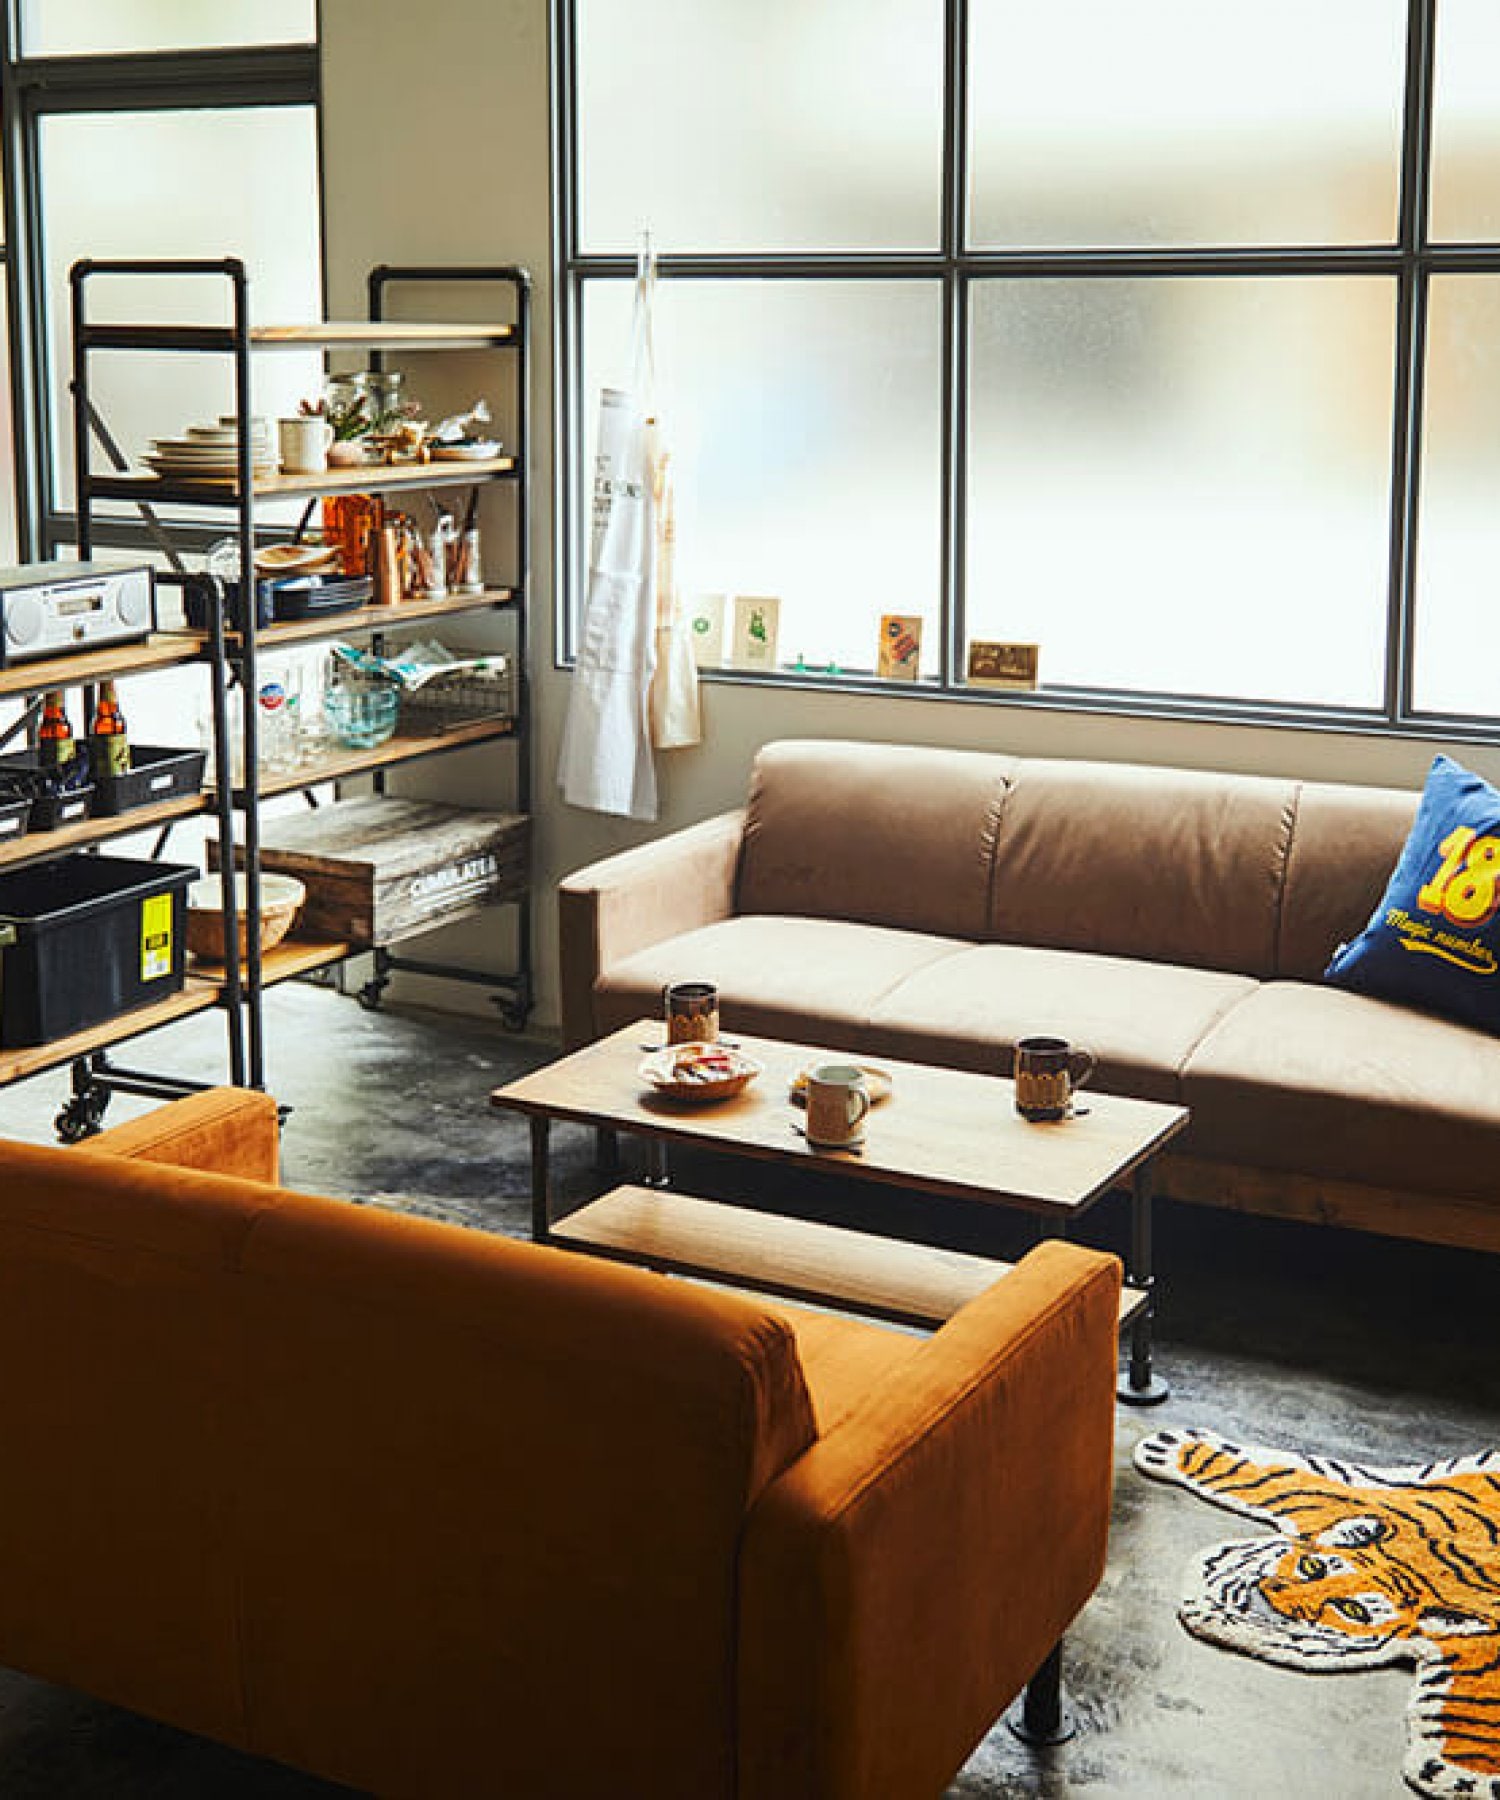 ニコアンド 家具 3レイヤーシェルフ クラフトマンシリーズ 棚 可動式 